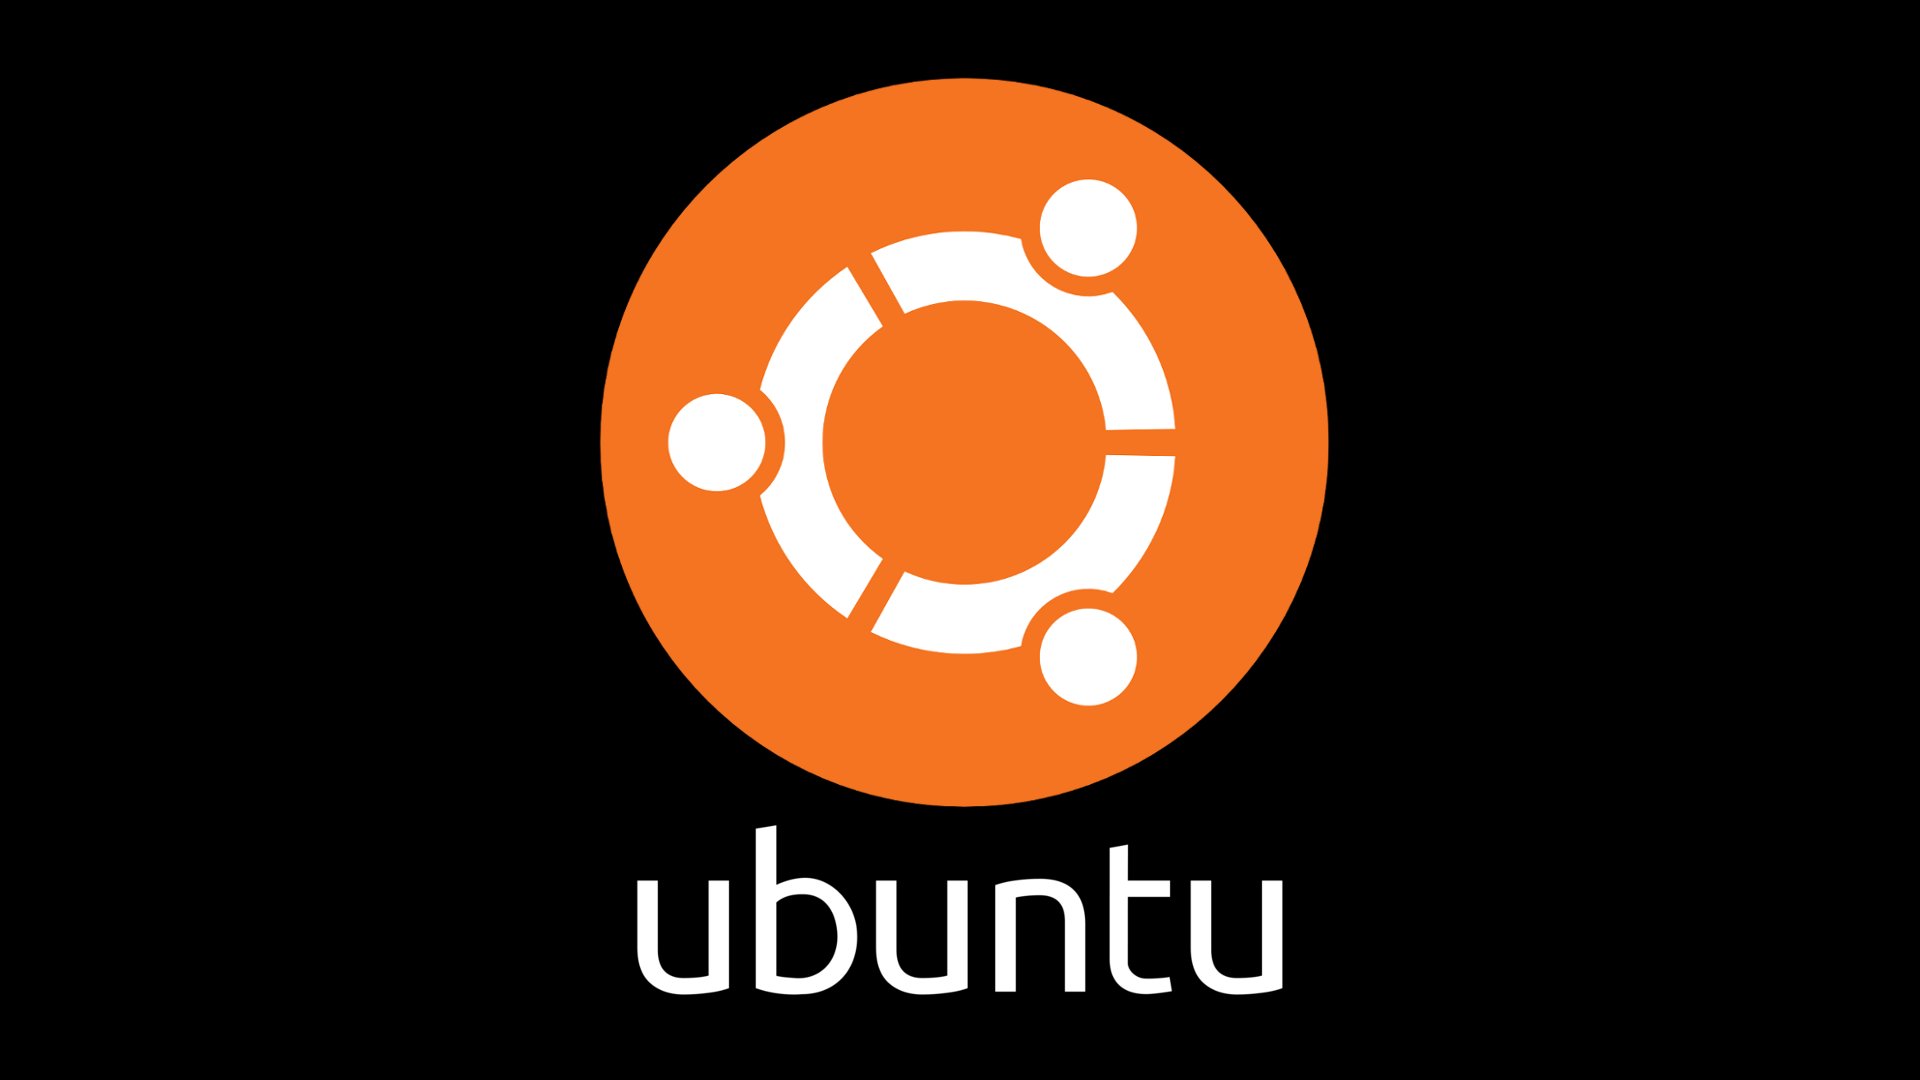 ubuntu 16.04 desktop download iso 64 bit